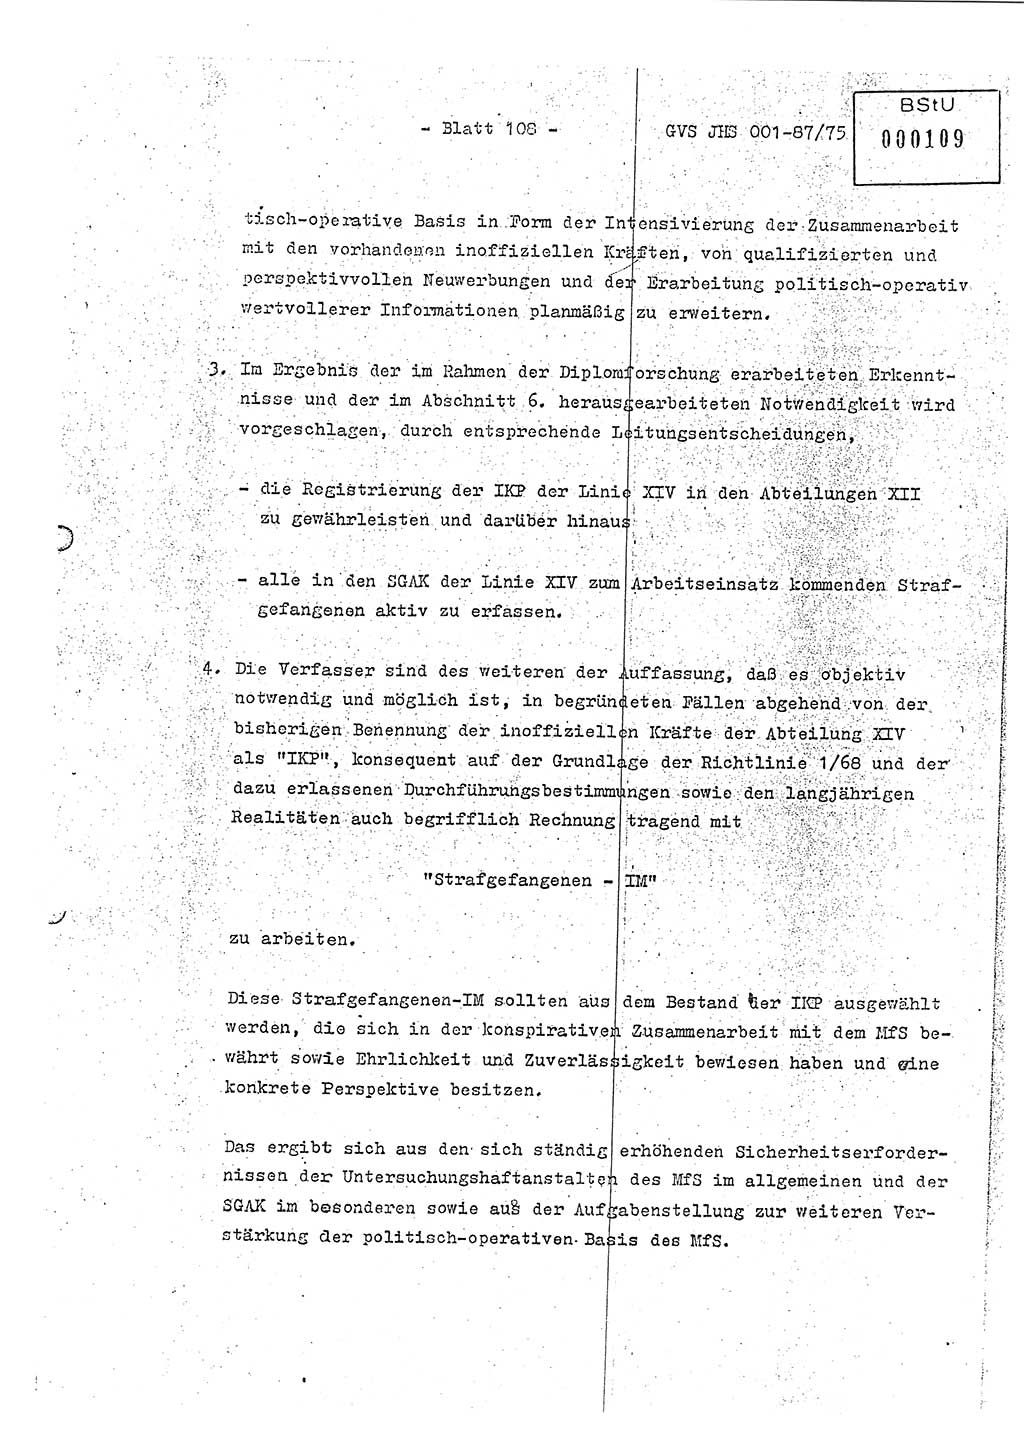 Diplomarbeit Hauptmann Volkmar Heinz (Abt. ⅩⅣ), Oberleutnant Lothar Rüdiger (BV Lpz. Abt. Ⅺ), Ministerium für Staatssicherheit (MfS) [Deutsche Demokratische Republik (DDR)], Juristische Hochschule (JHS), Geheime Verschlußsache (GVS) o001-87/75, Potsdam 1975, Seite 108 (Dipl.-Arb. MfS DDR JHS GVS o001-87/75 1975, S. 108)